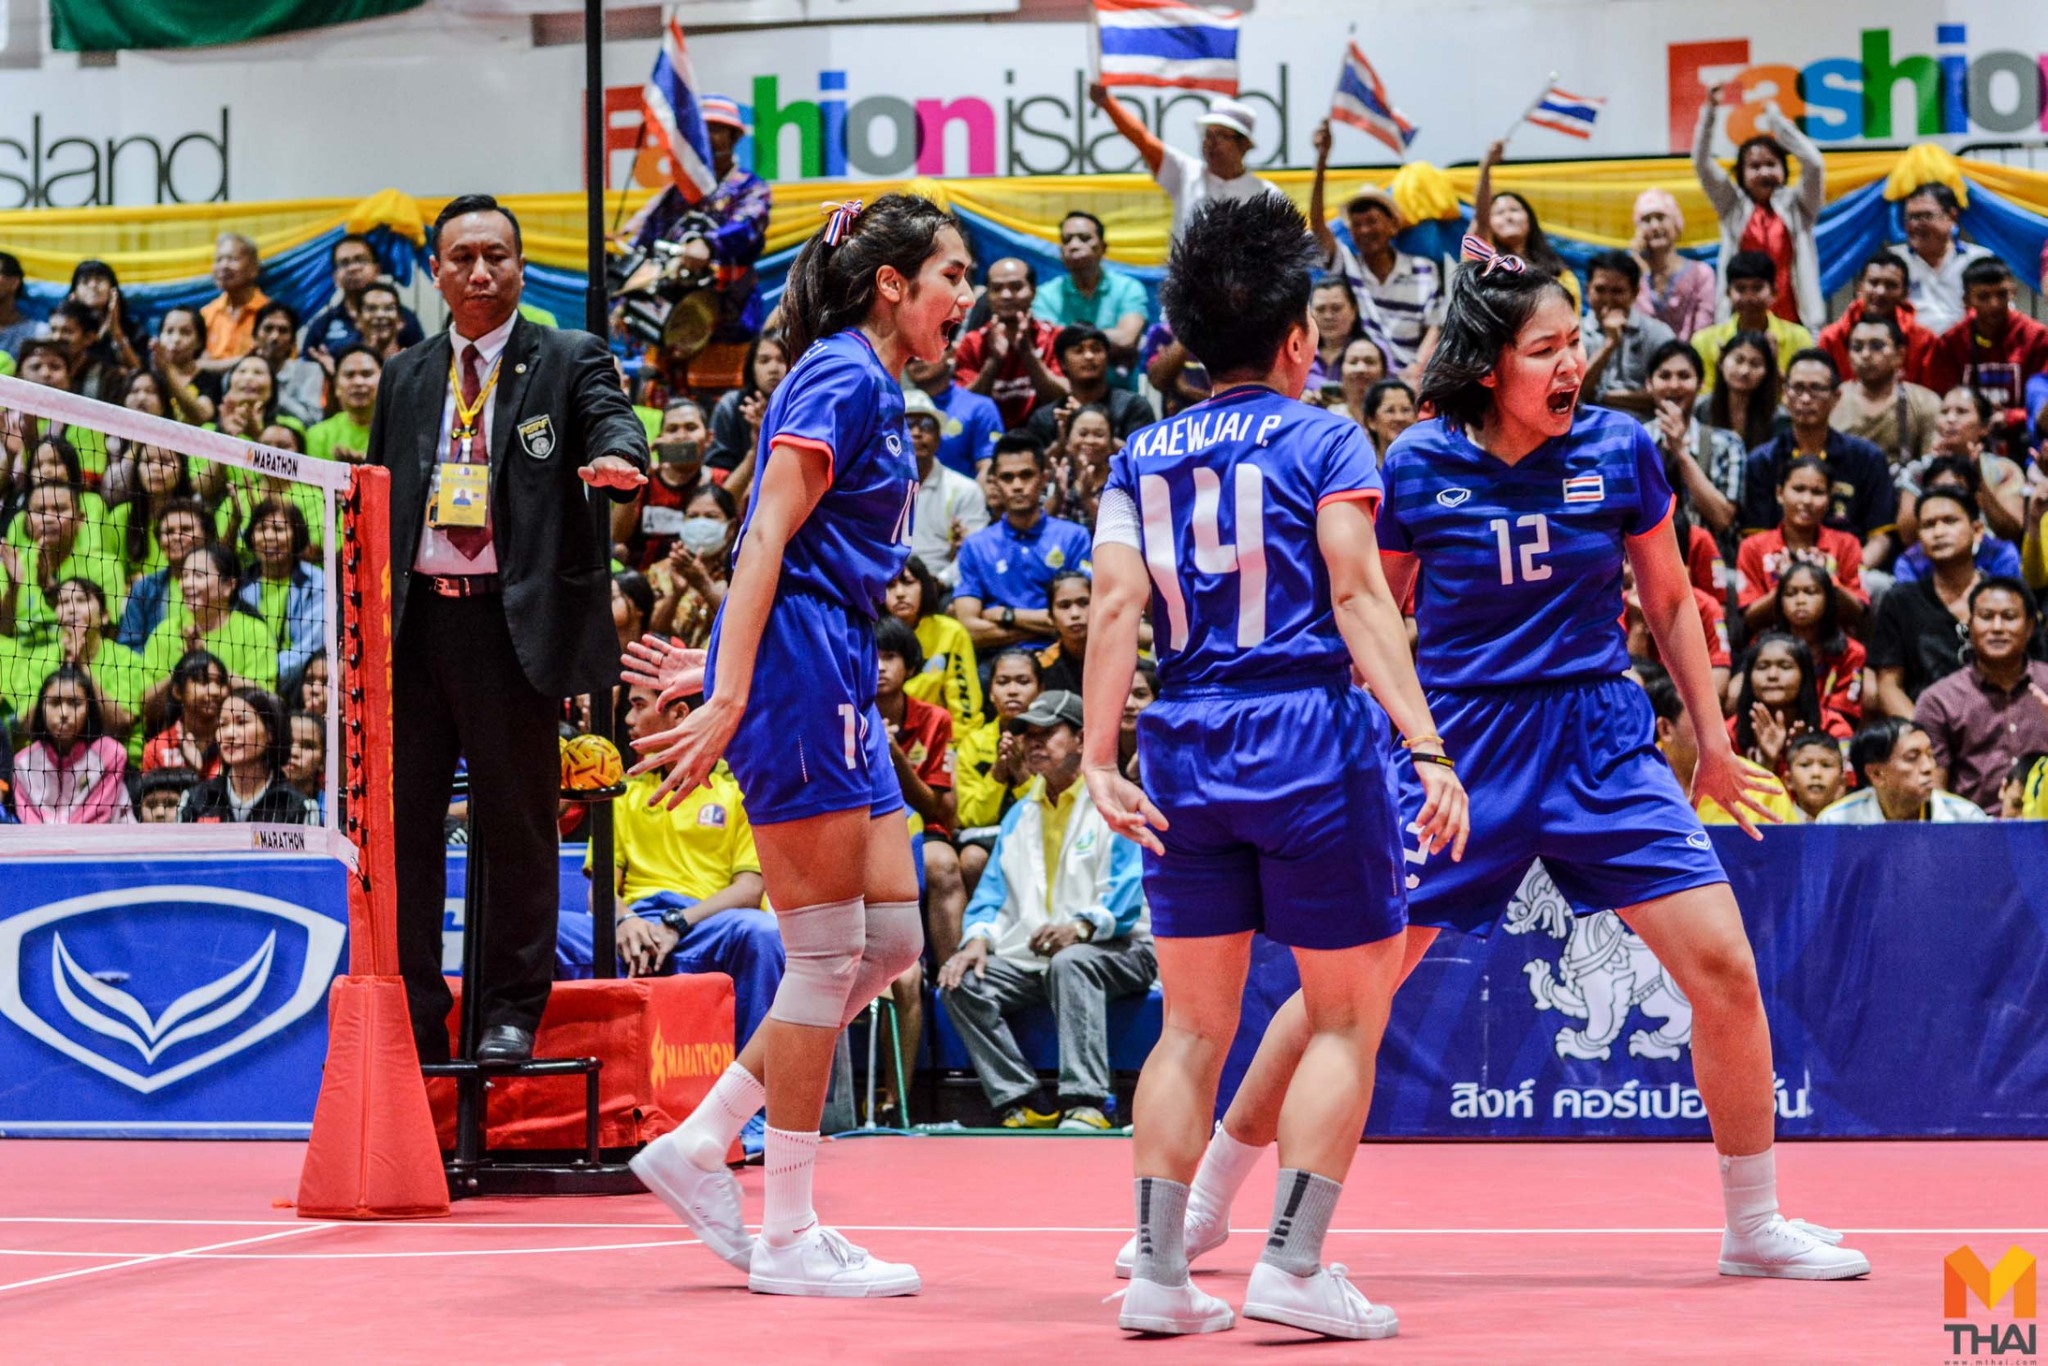 ซีเกมส์ 2019 ตะกร้อ ตะกร้อหญิงทีมชาติไทย